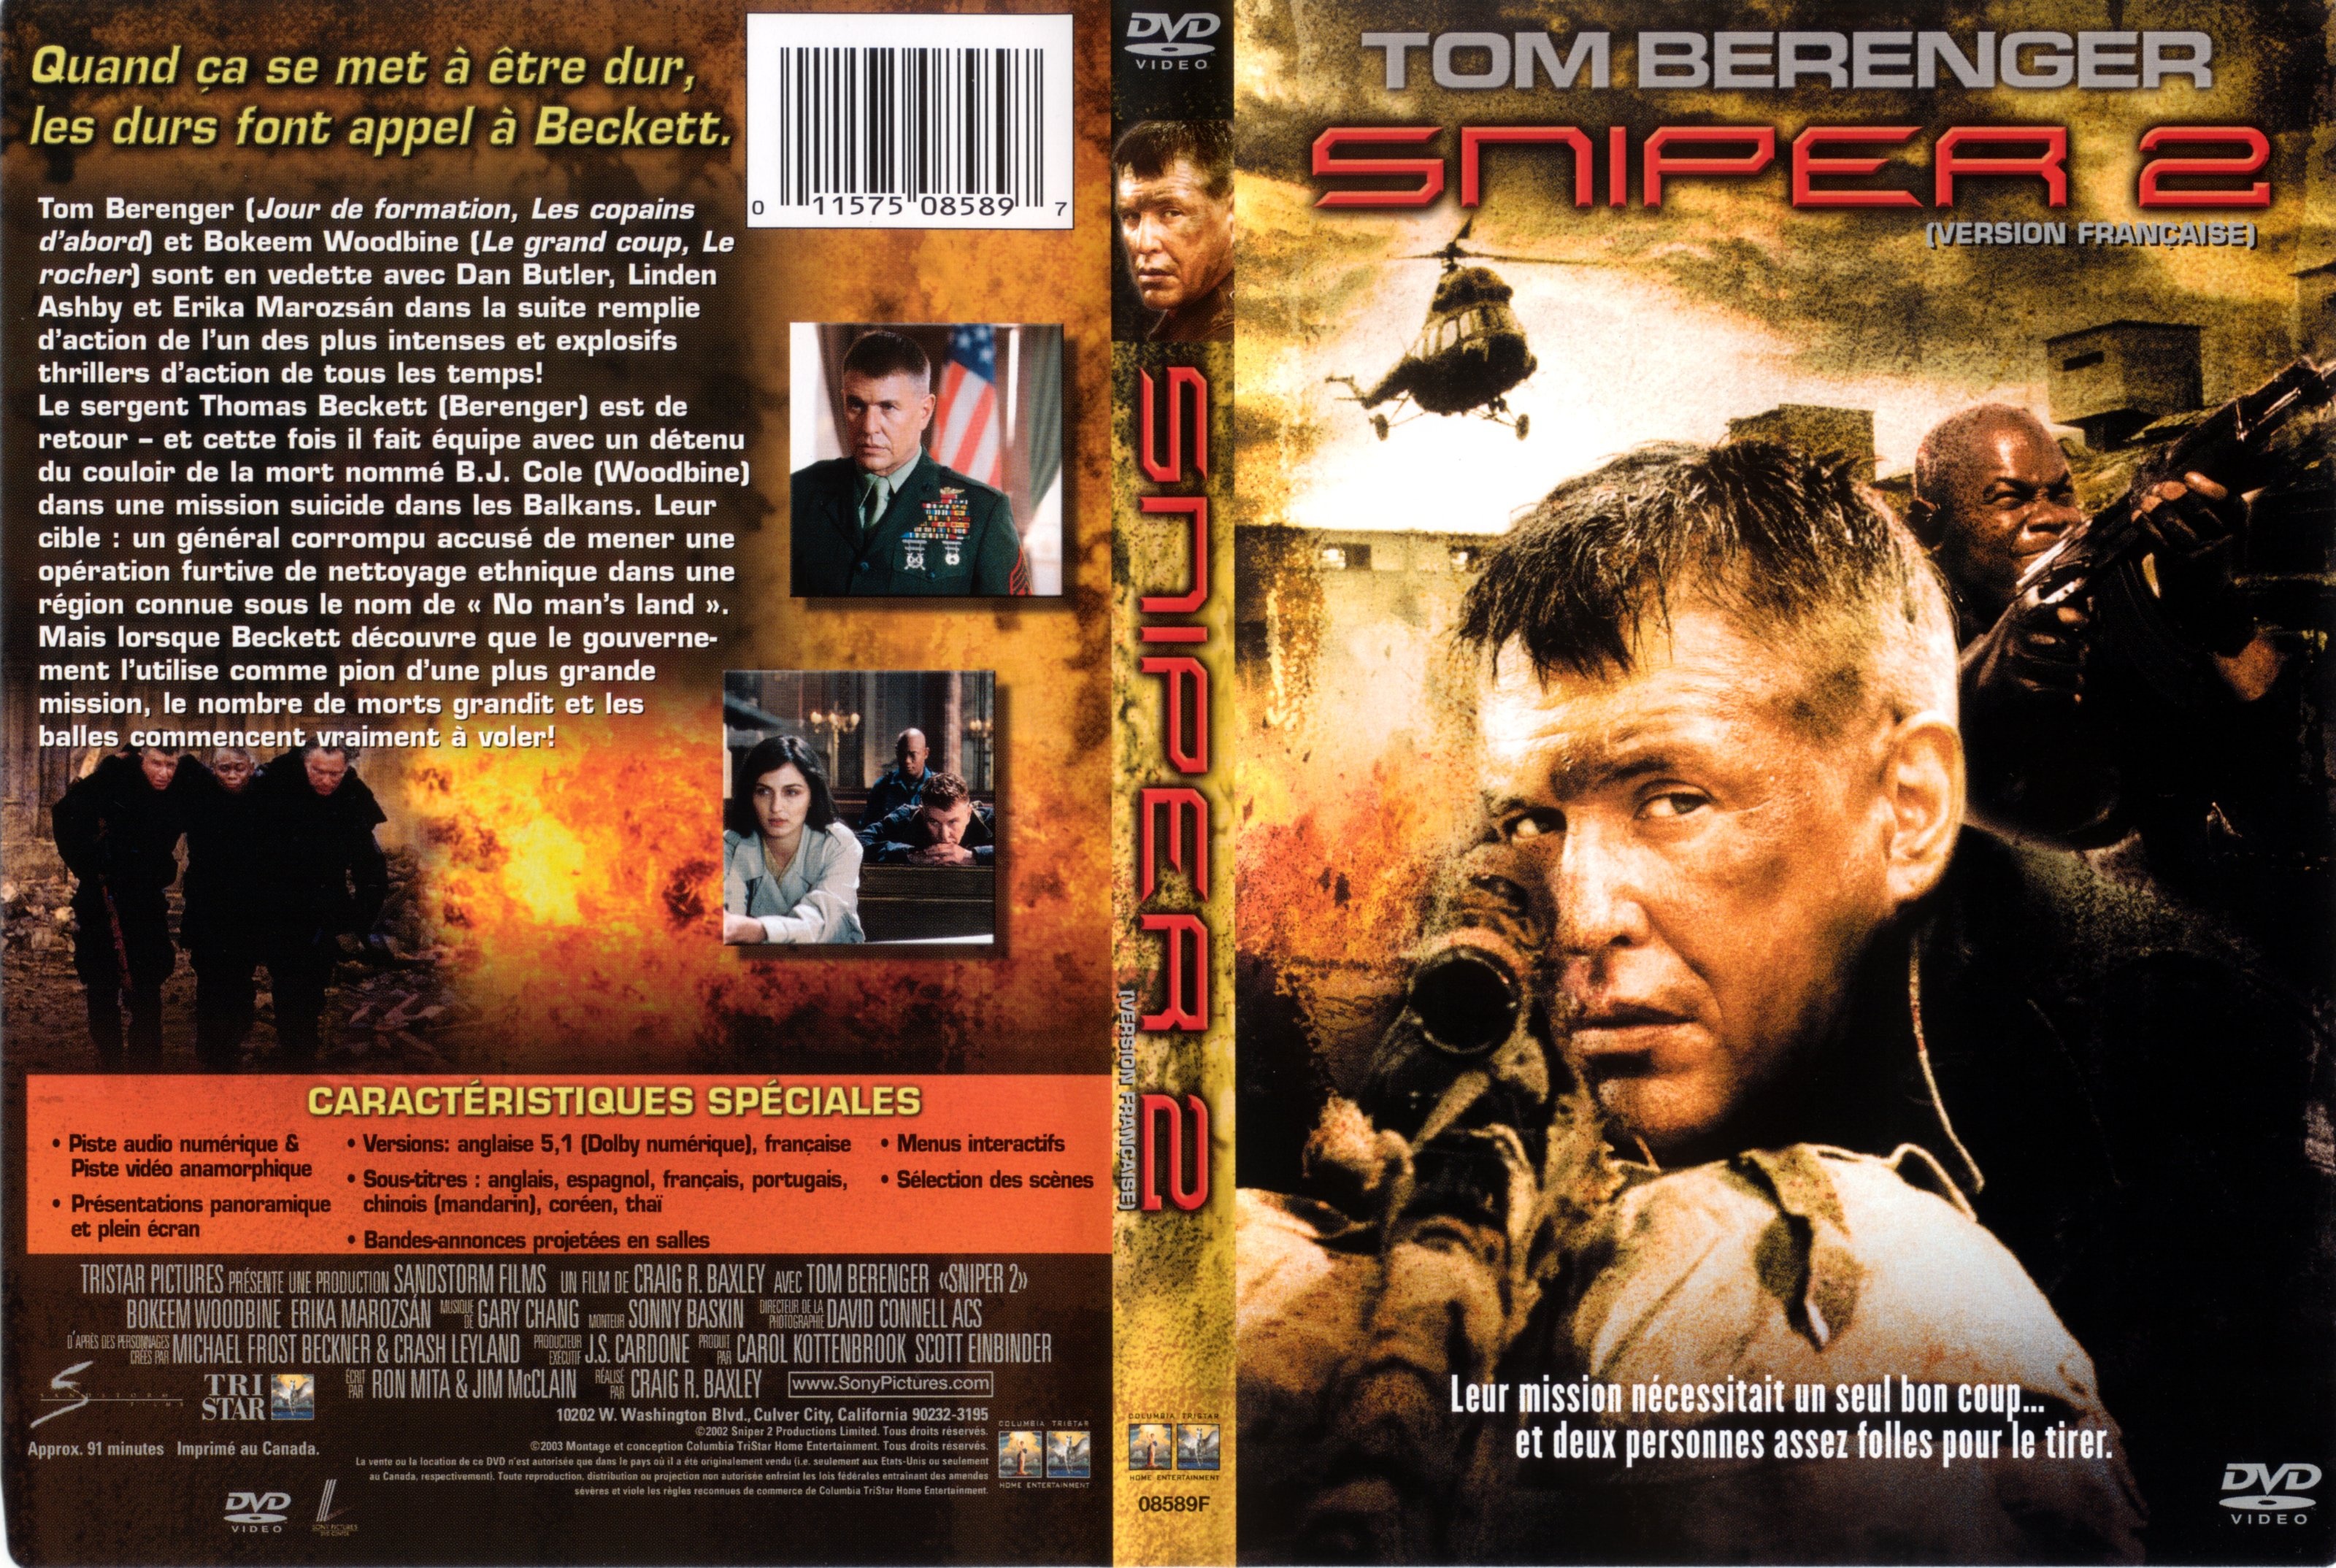 Jaquette DVD Sniper 2 v2